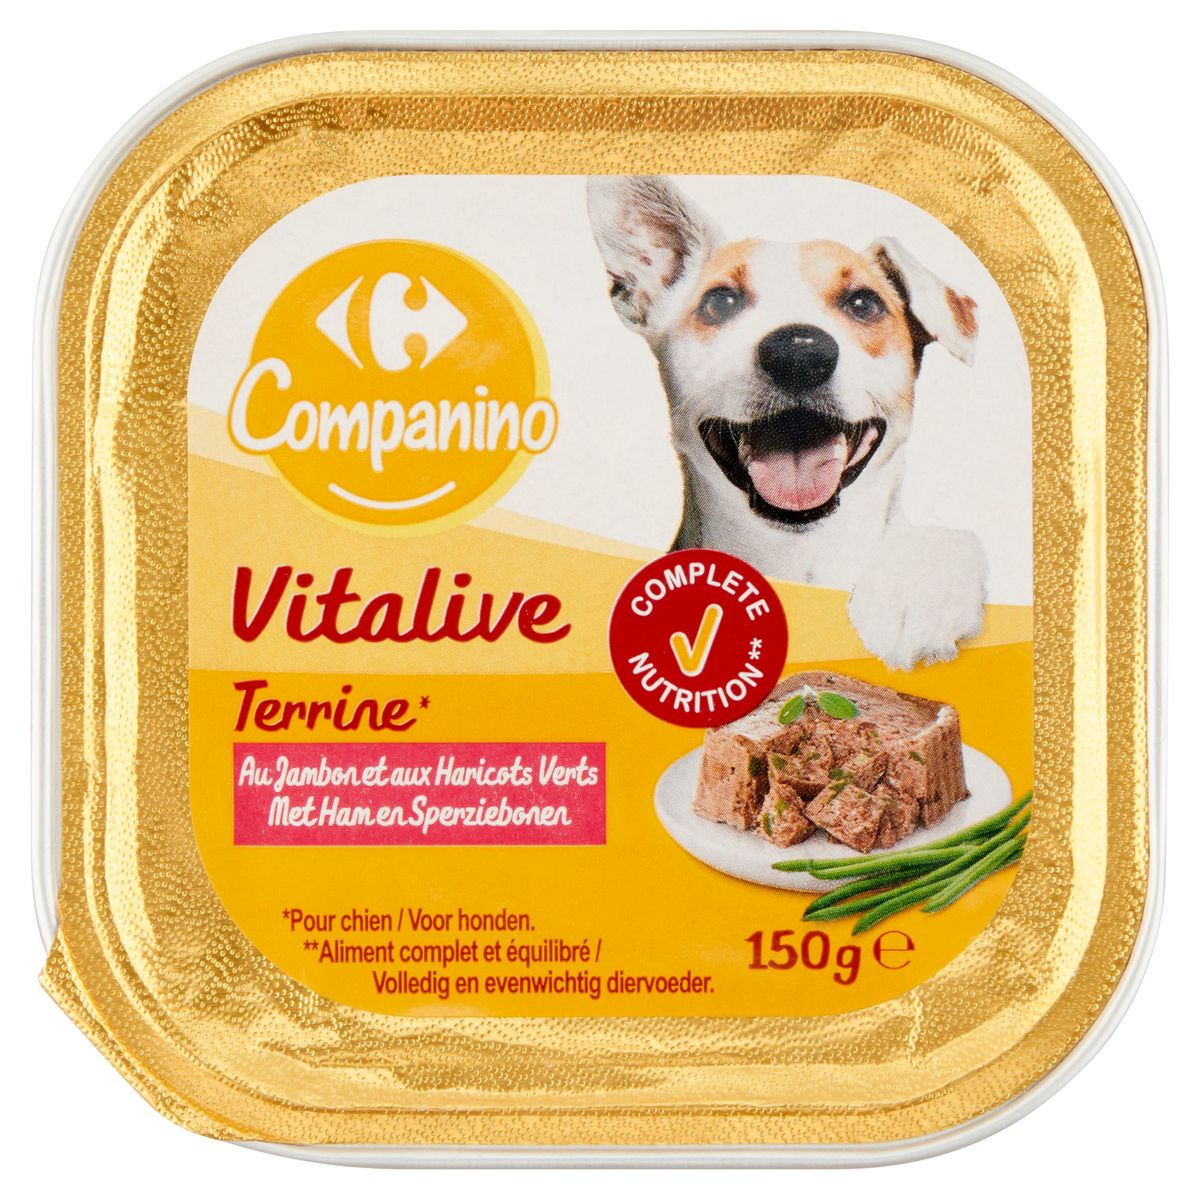 Carrefour Companino Vitalive Terrine met Ham en Sperziebonen 150 g